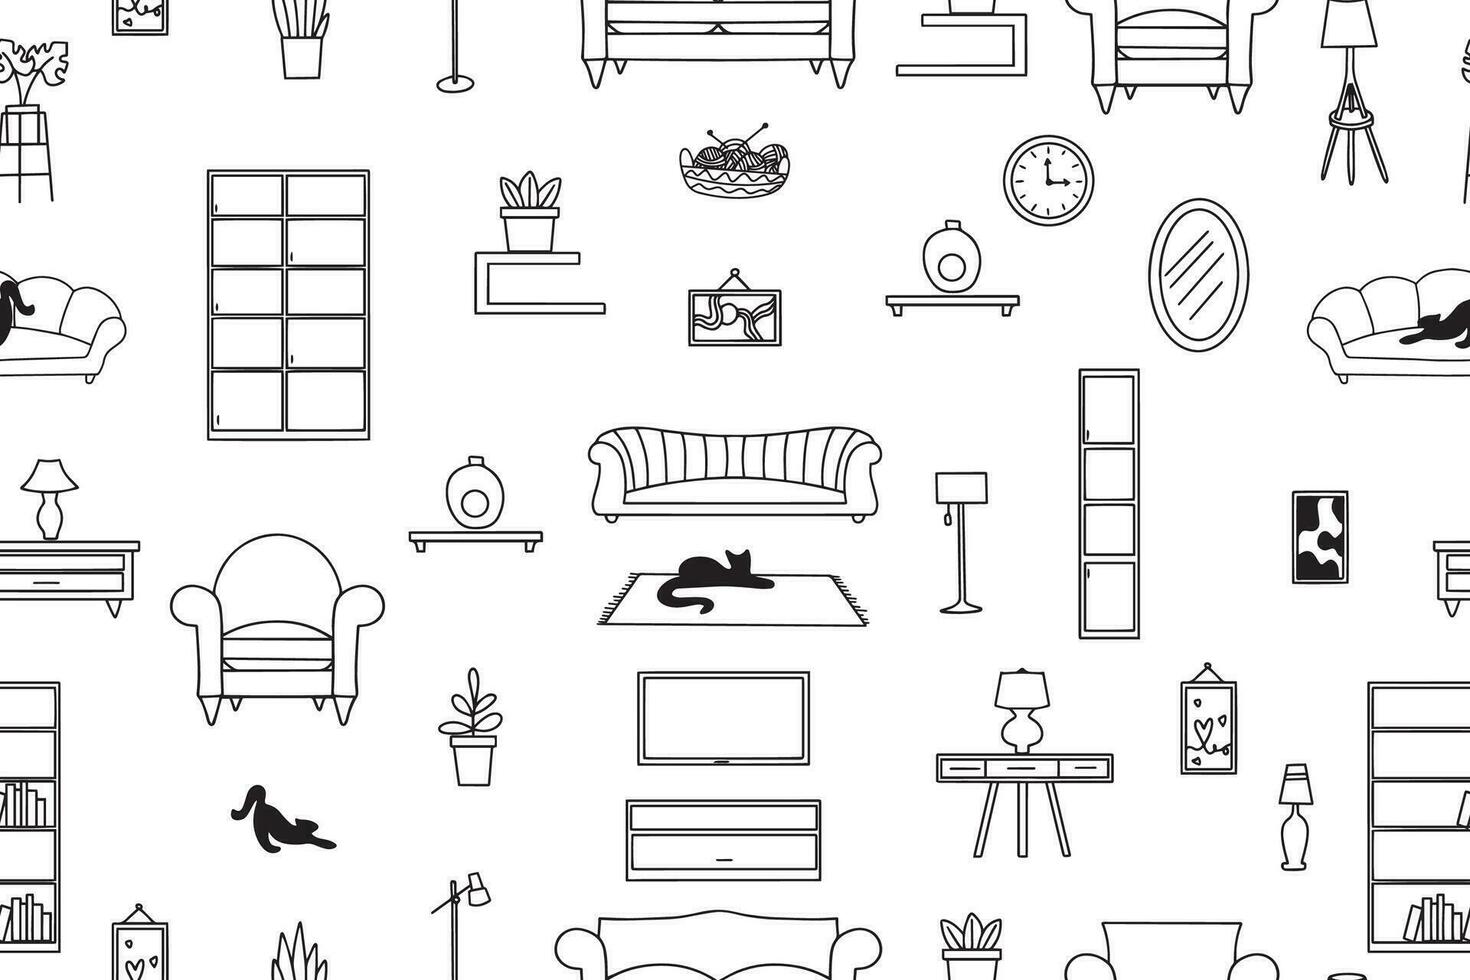 naadloos patroon van meubilair, lampen, interieur artikelen. modern vector illustratie voor banier, web bladzijde, afdrukken media.